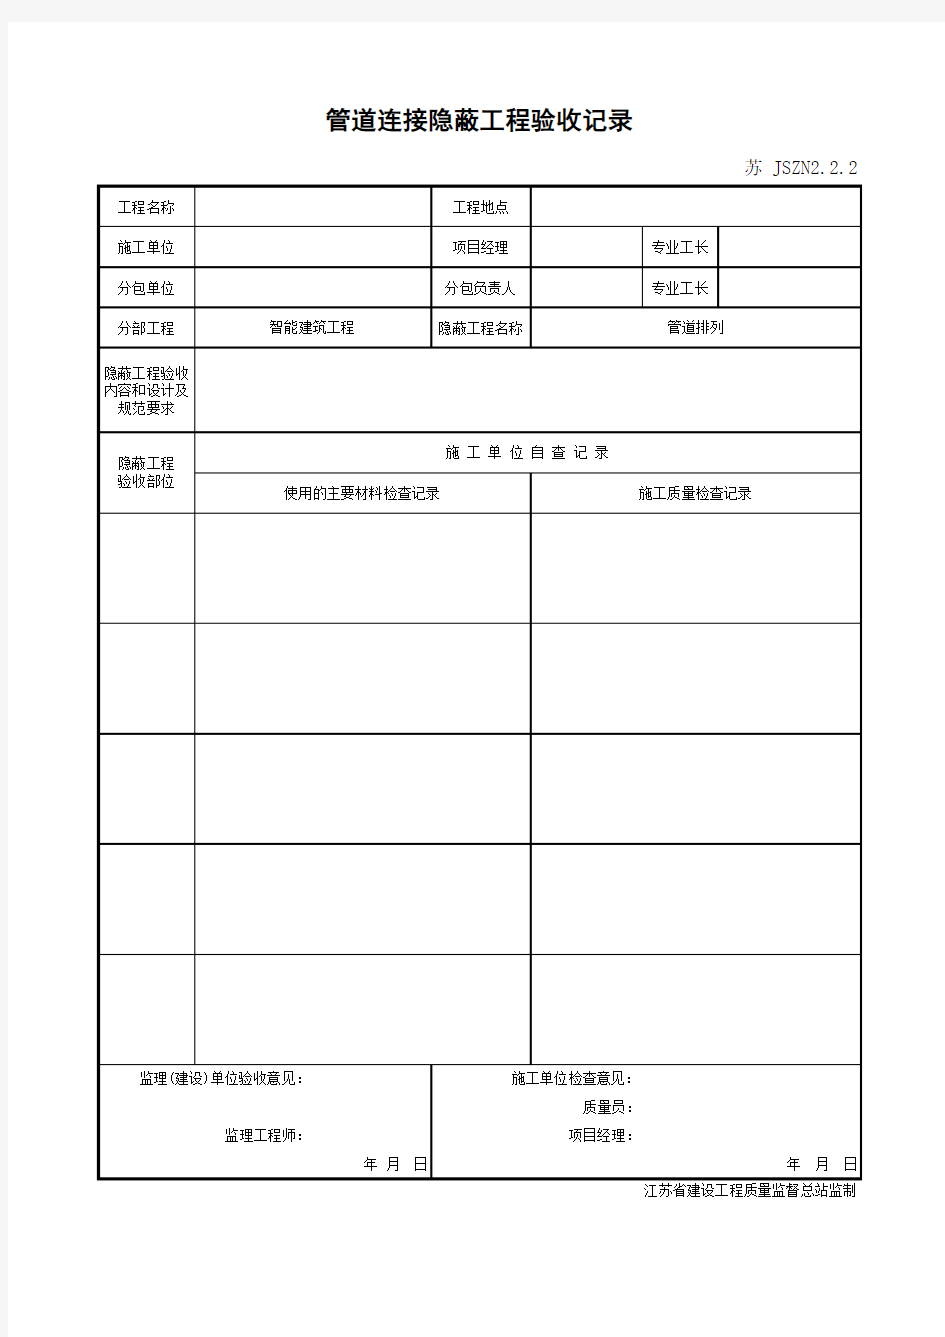 江苏省建设工程质监0190910六版表格文件JSZN2.2.2